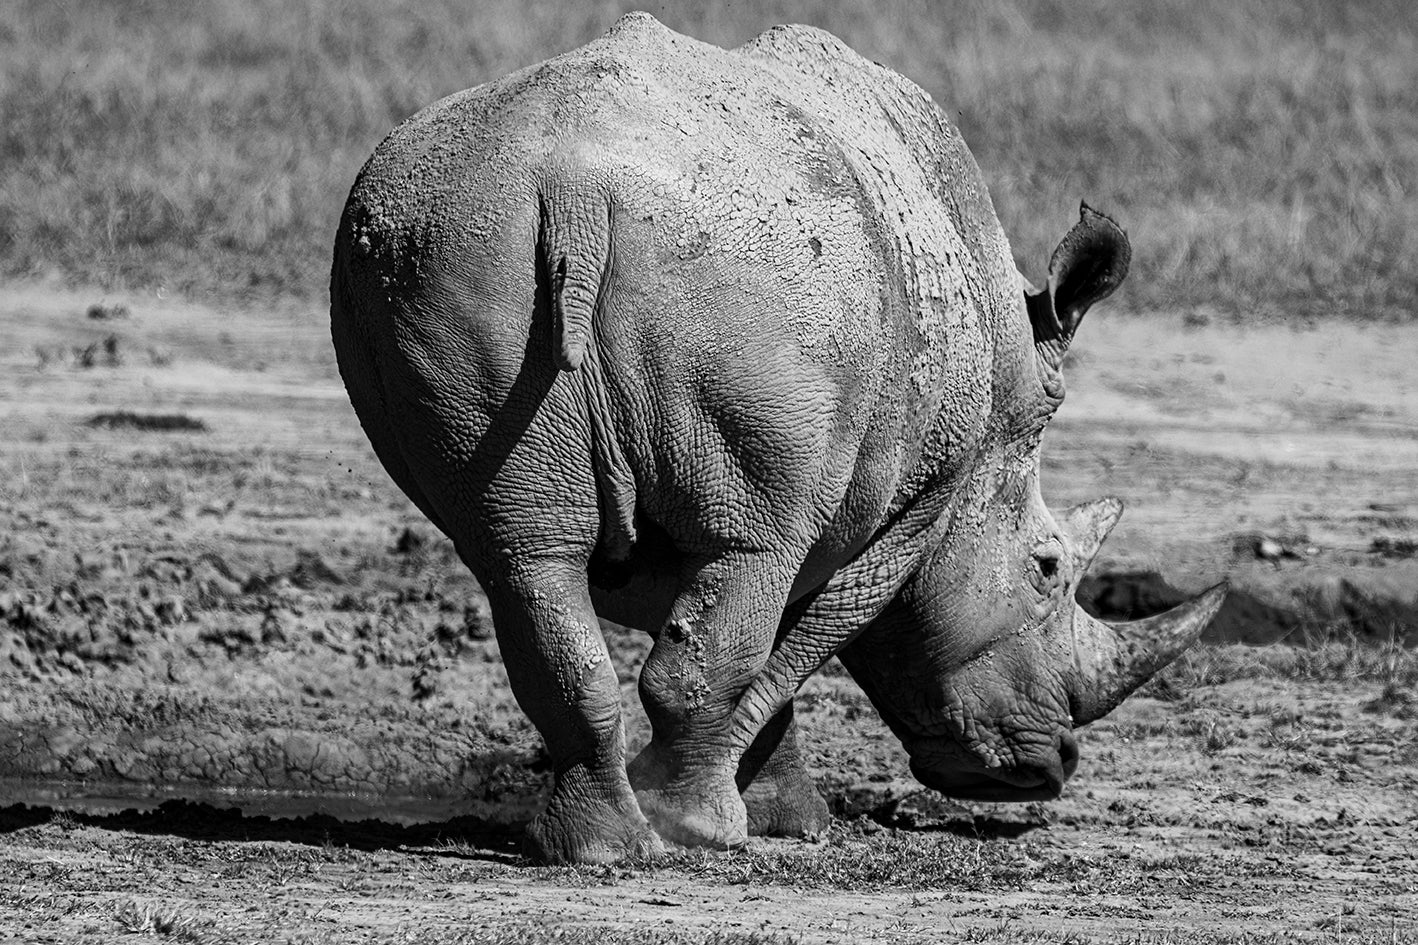 A Rhinoceros'  Muddy Backside